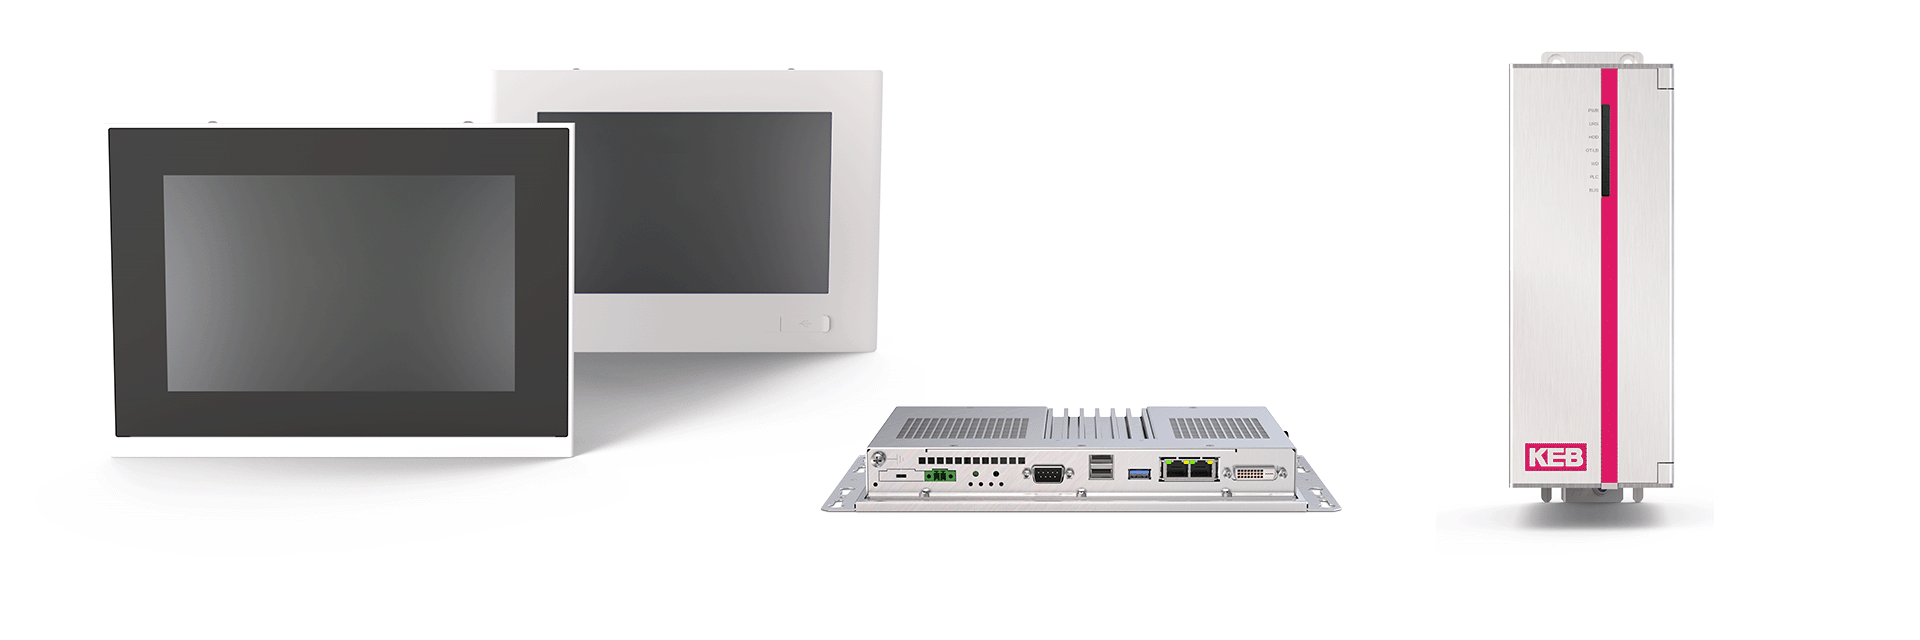 Industrie PC C6 E22 in den Bauformen Panel, Box und Book Mount